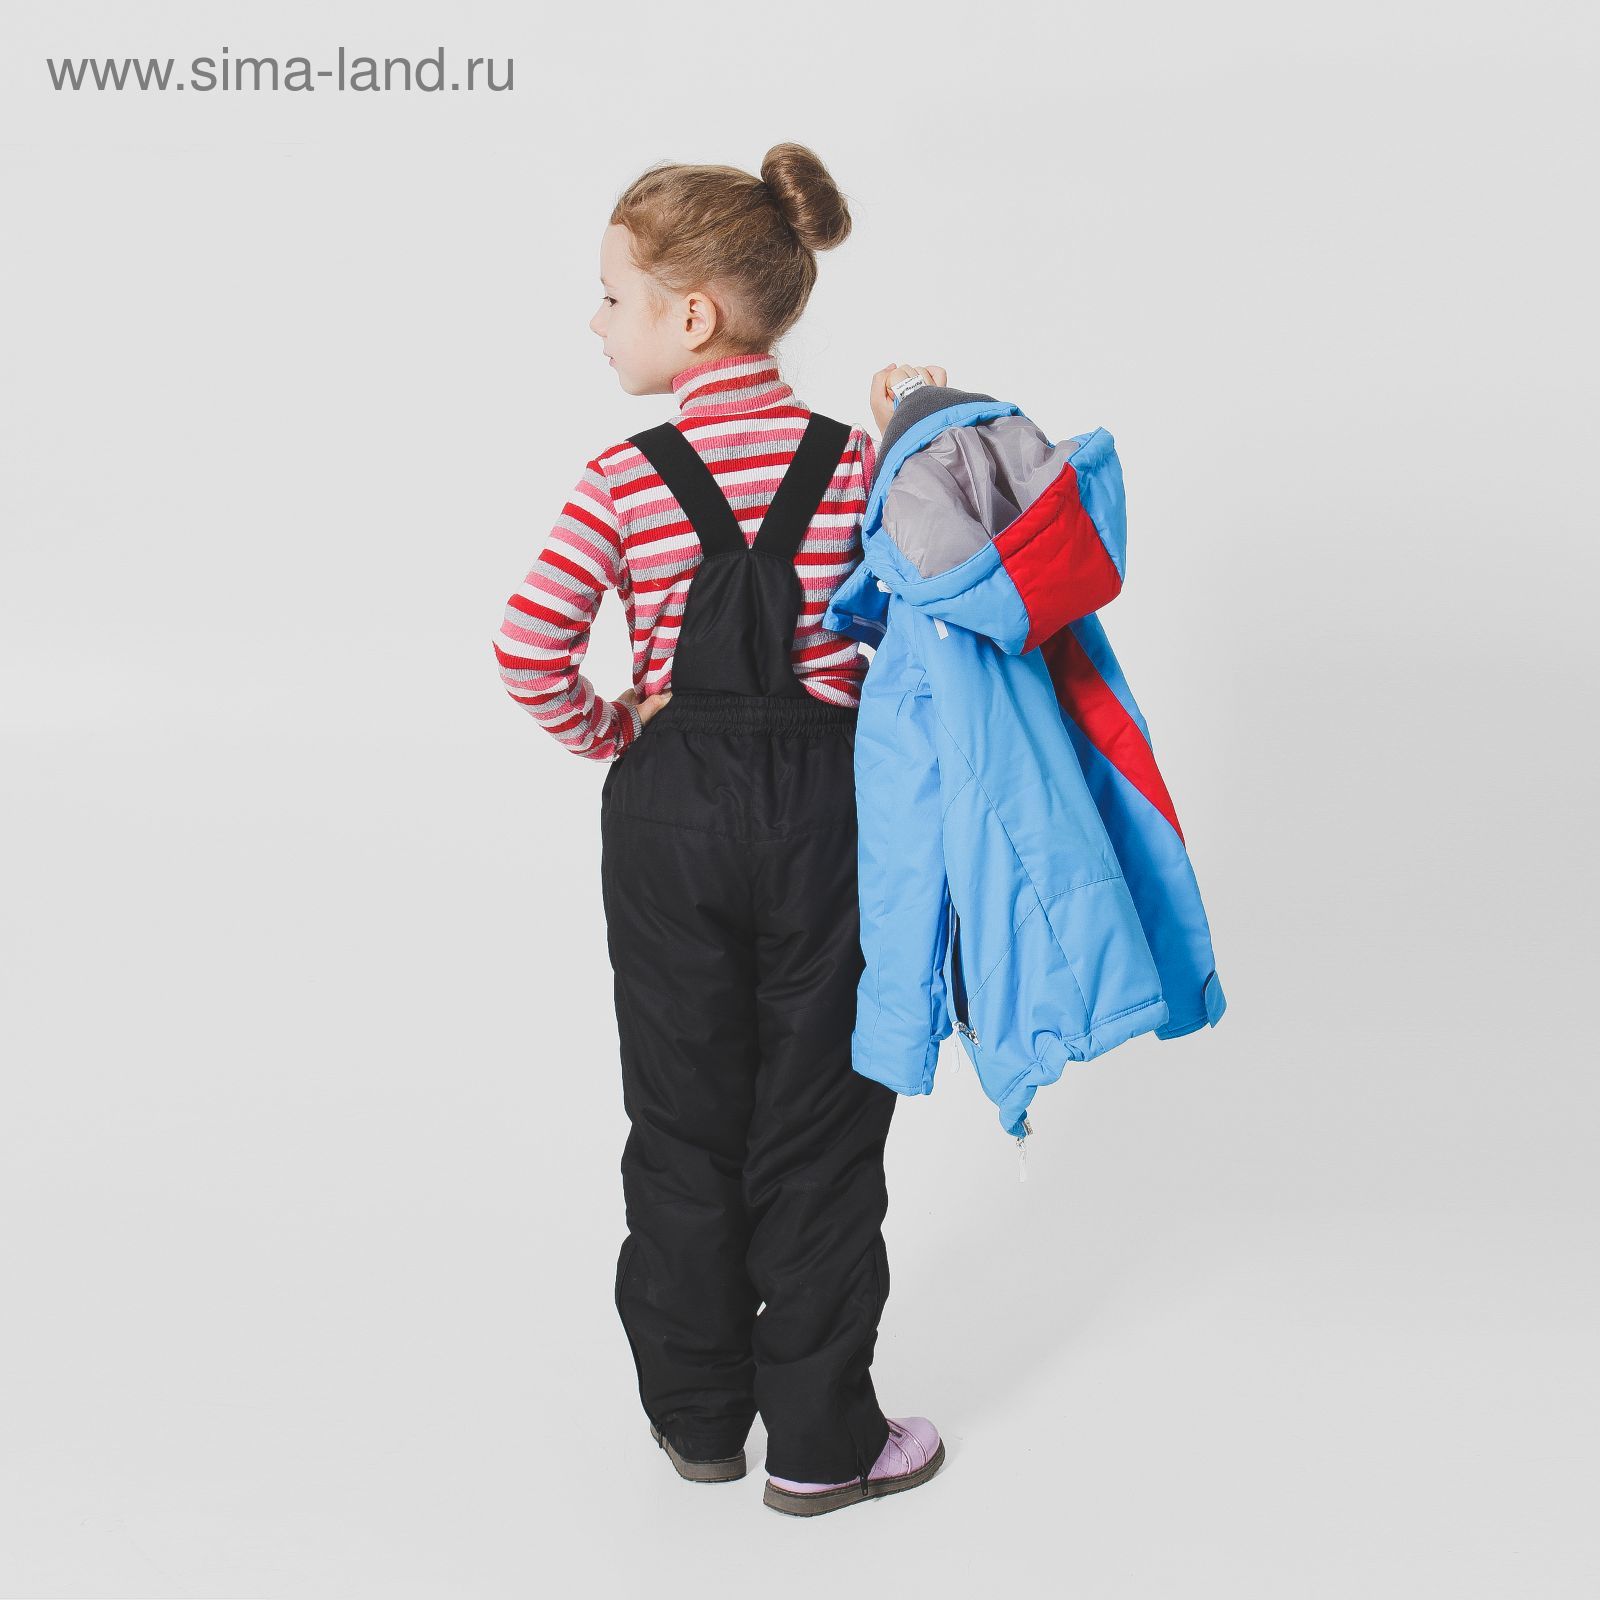 Костюм детский ( куртка+штаны) ONLITOP,куртка-голубой/красный; штаны-чёрные (р. 34)